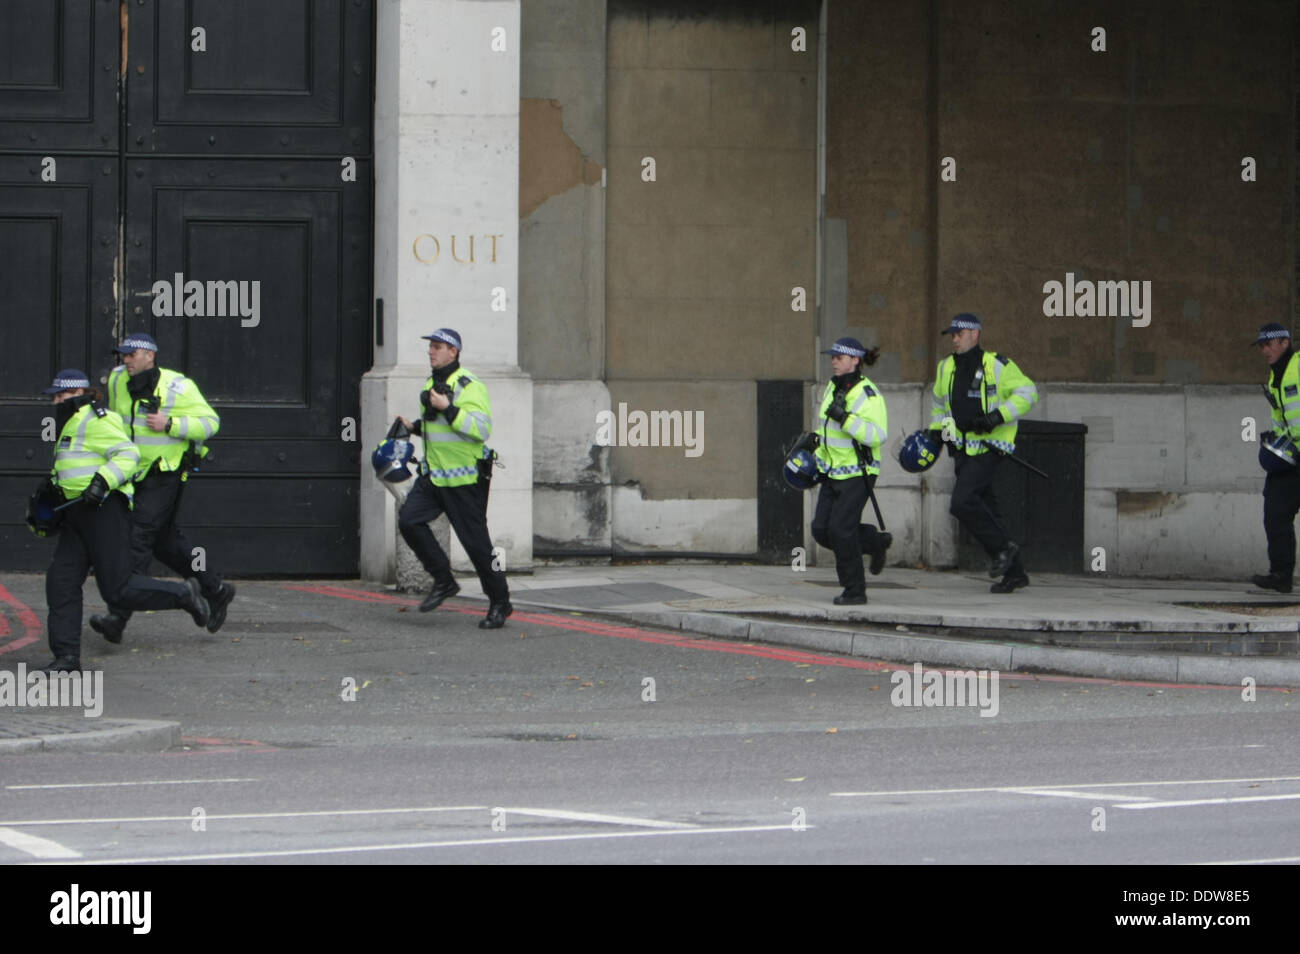 London, UK. 07. Sep, 2013. März und Kundgebung in East London halten Polizei Verstärkungen Ansturm auf anti-faschistischen Demonstranten versucht, Polizeilinien am weit rechten EDL (English Defence League) zu brechen. London, UK, 7. September 2013 Credit: Martyn Wheatley/Alamy Live News Stockfoto